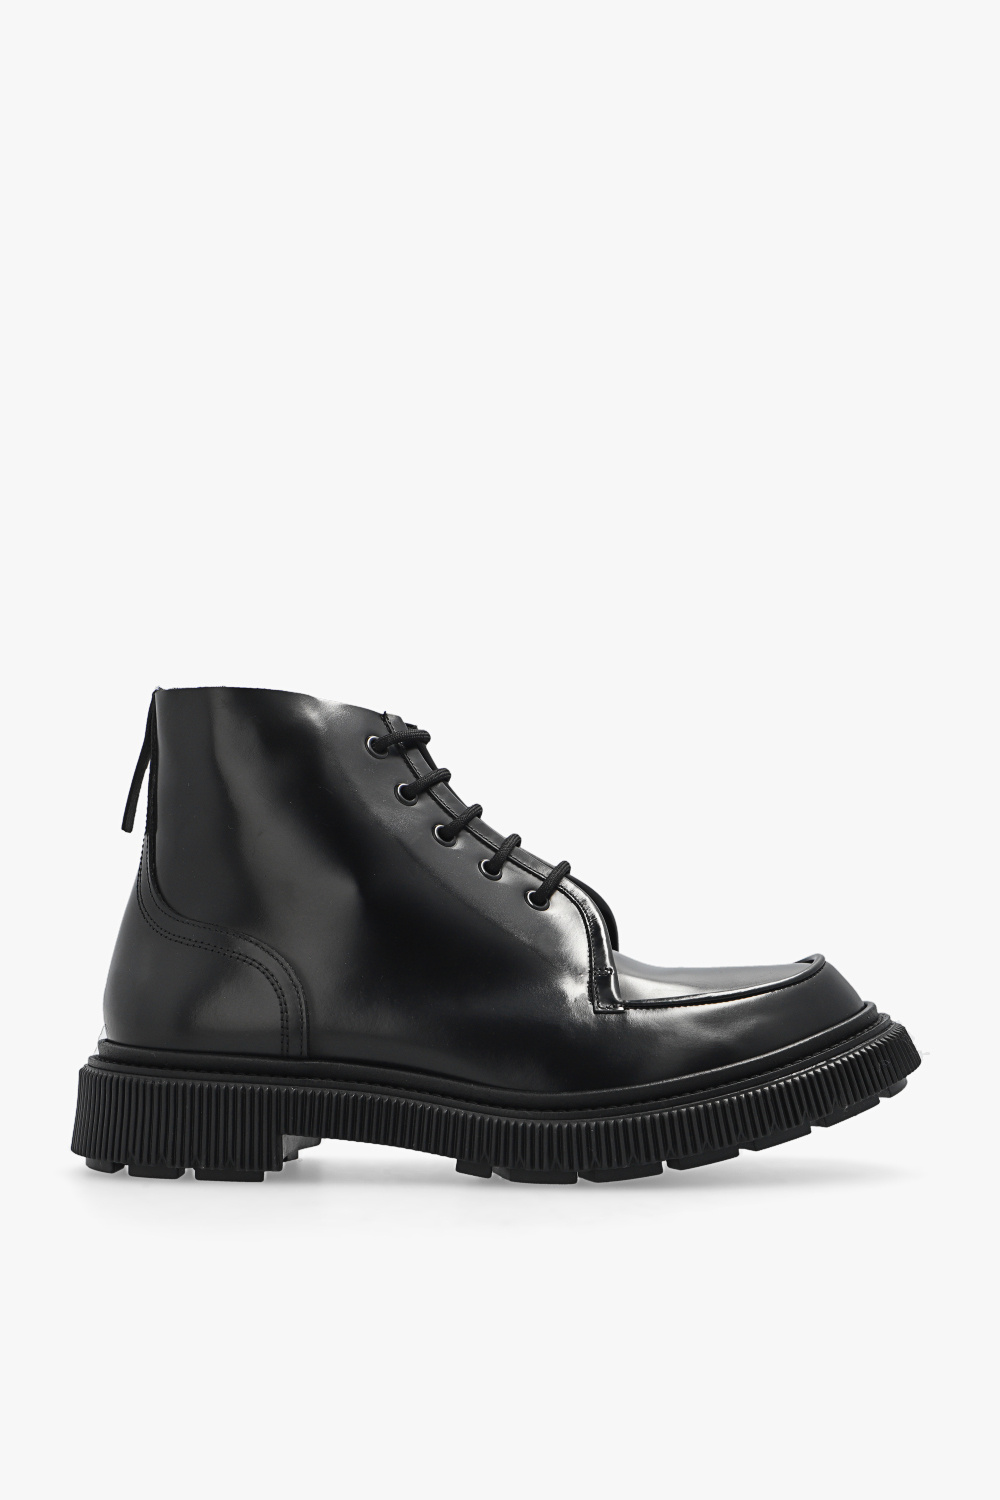 Adieu Paris 'Type 164' leather ankle boots | Men's Shoes | Vitkac